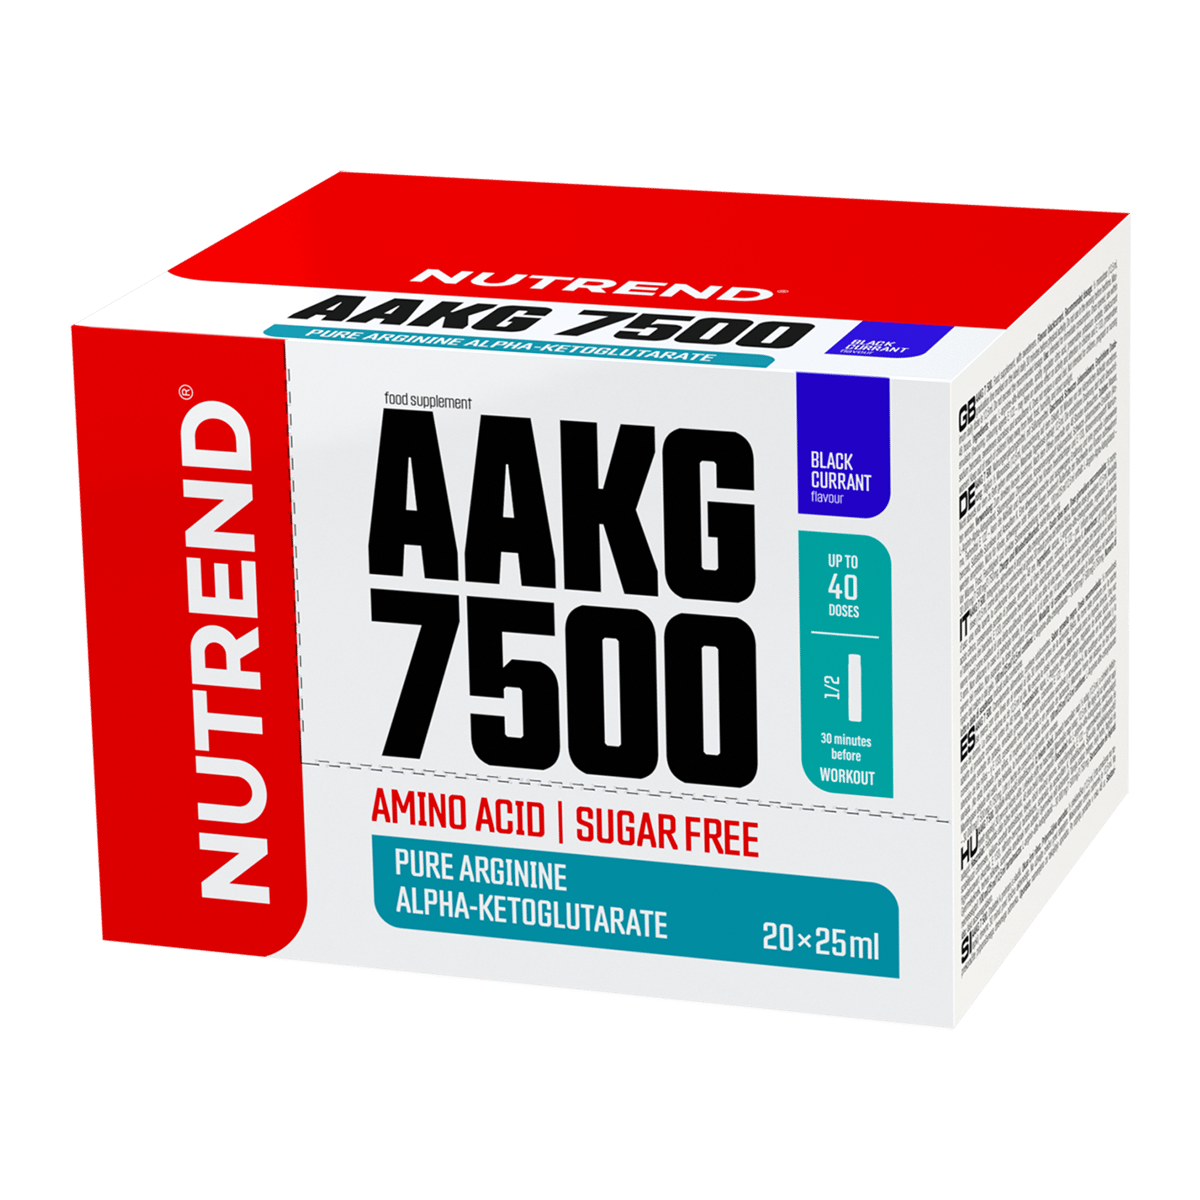 AAKG 7500 | NUTREND